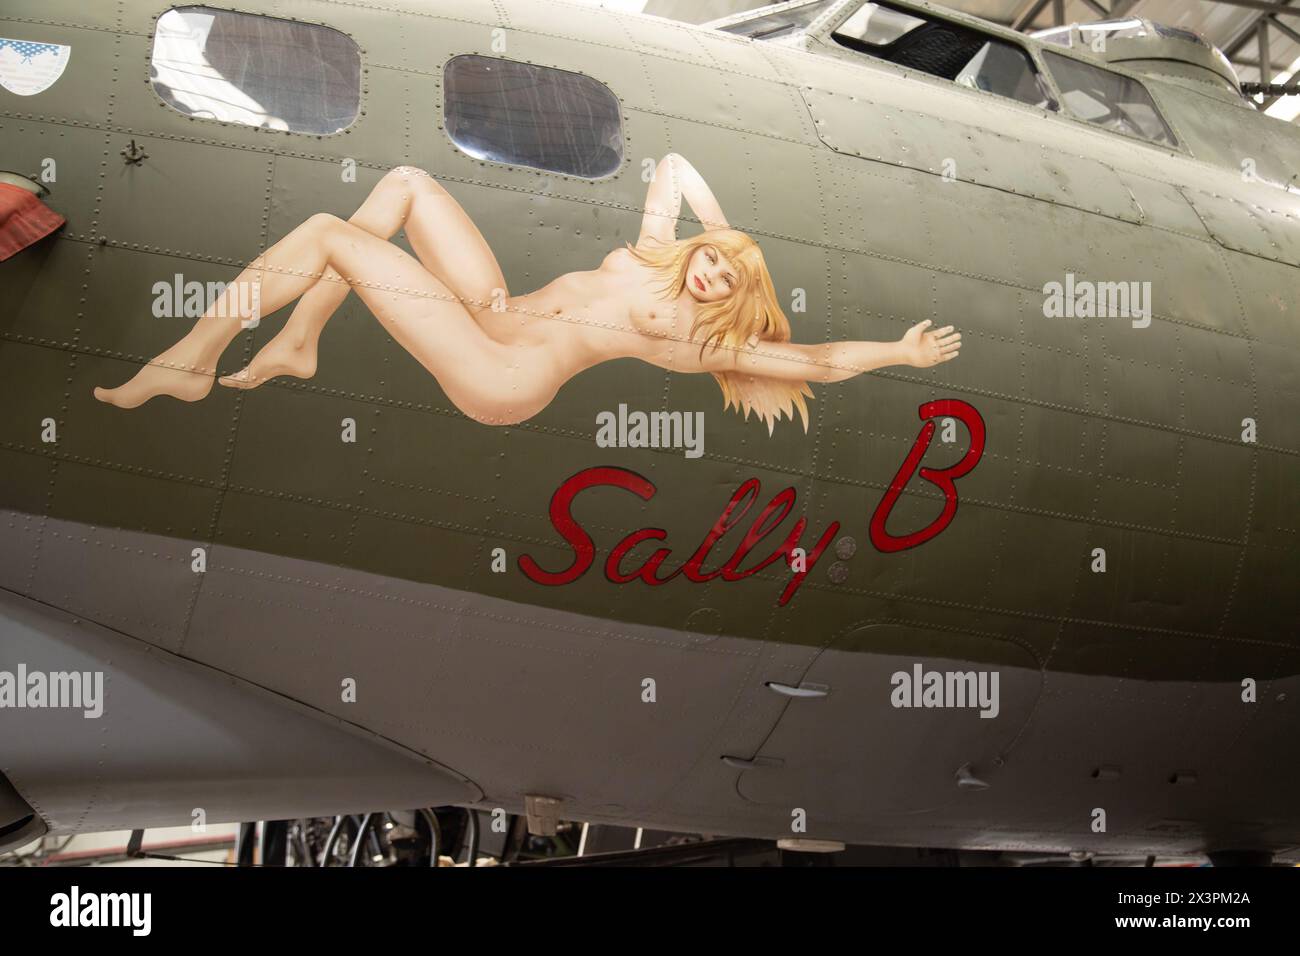 Sally B Nose art sur Boeing B-17 Flying Fortress, bombardier lourd quatre moteurs américain de la seconde Guerre mondiale. IWM, Duxford, Royaume-Uni Banque D'Images